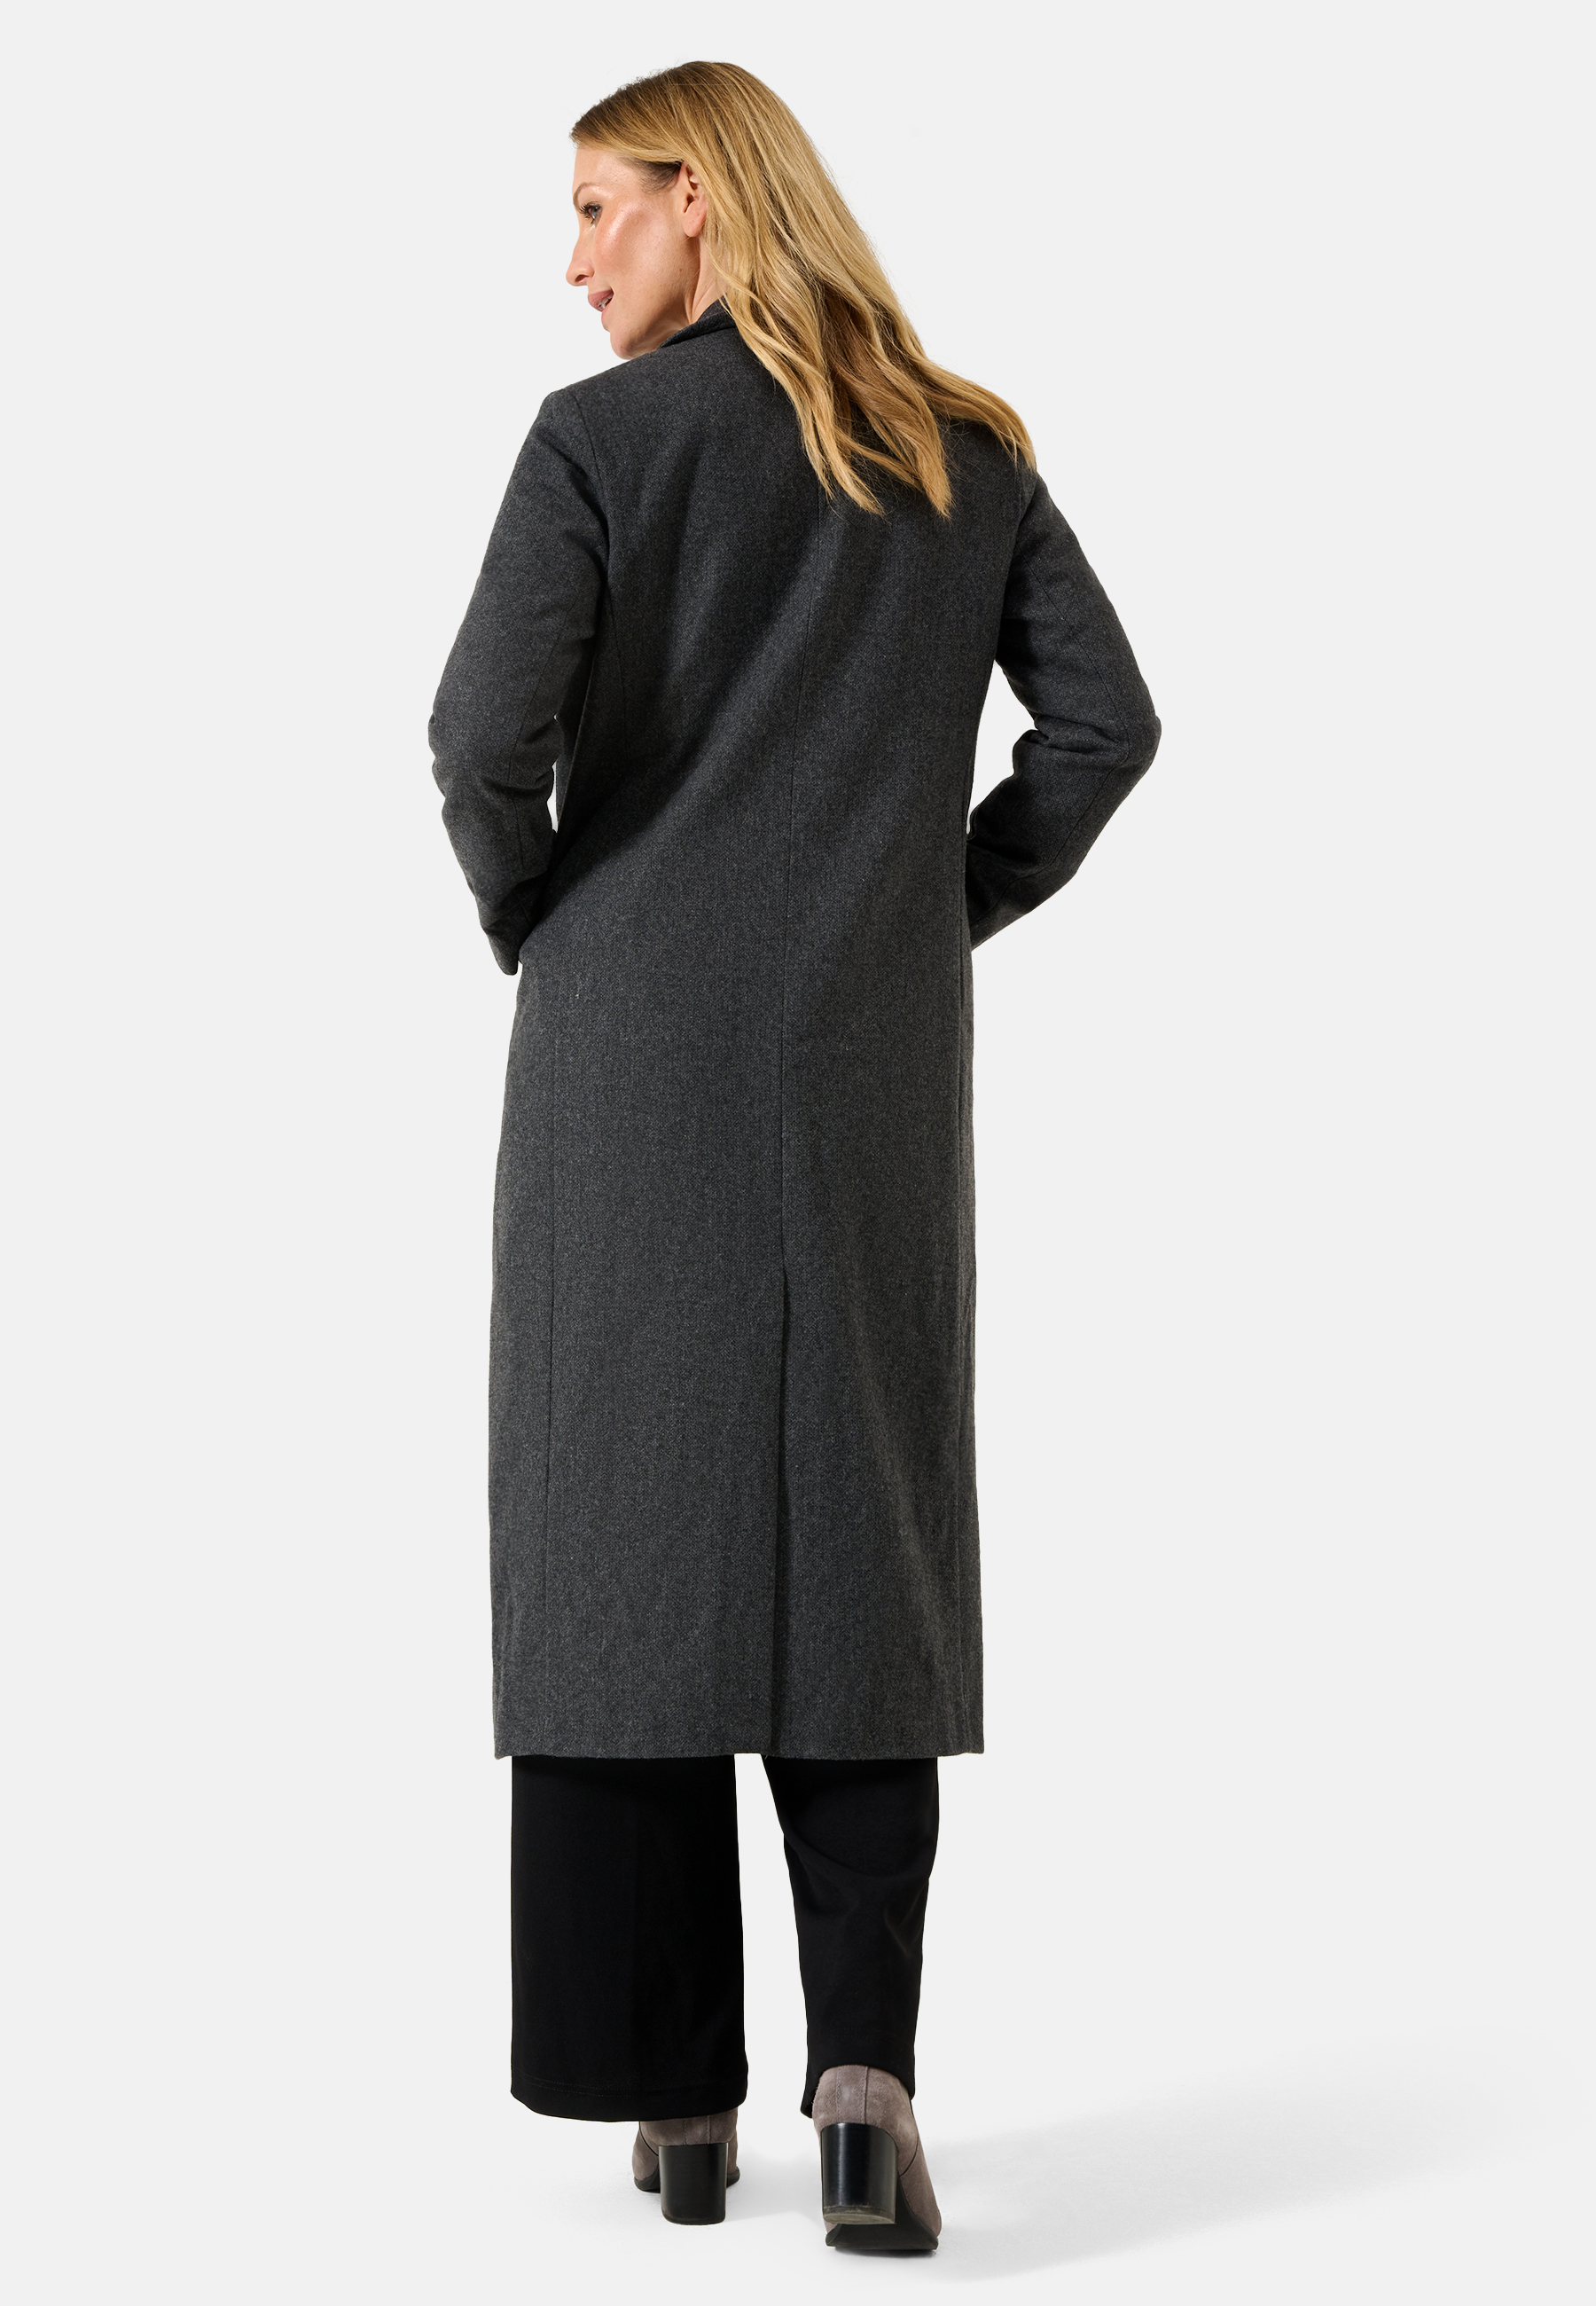 Damen Textil Mantel Alberta in Grau von Ricano, Rückansicht am Model